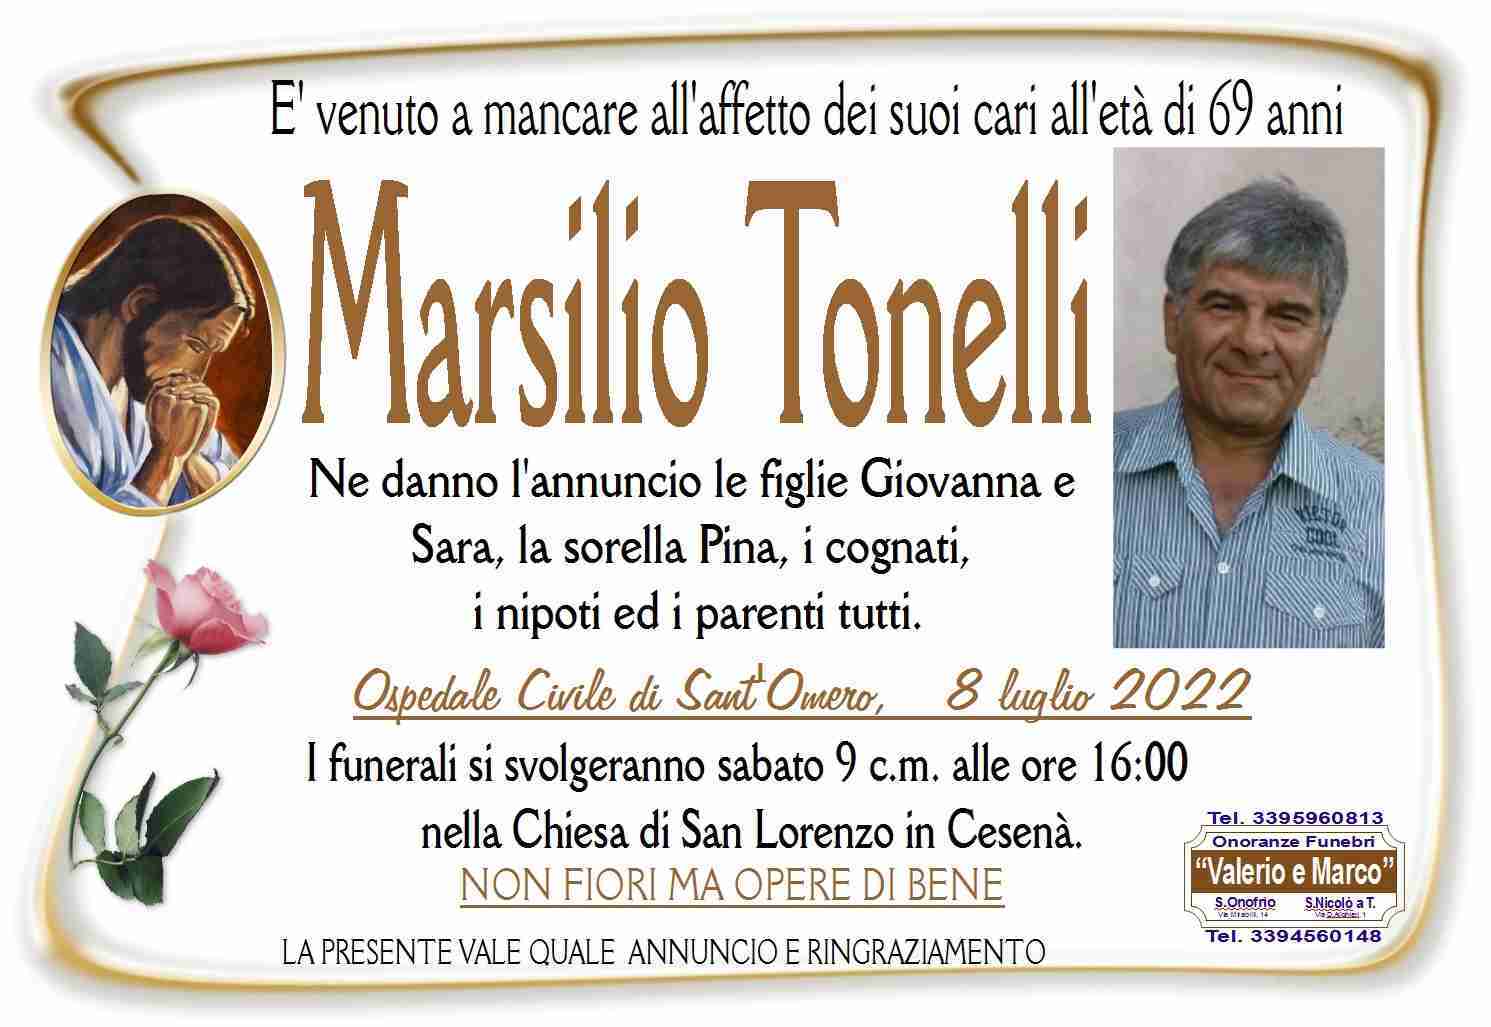 Marsilio Tonelli